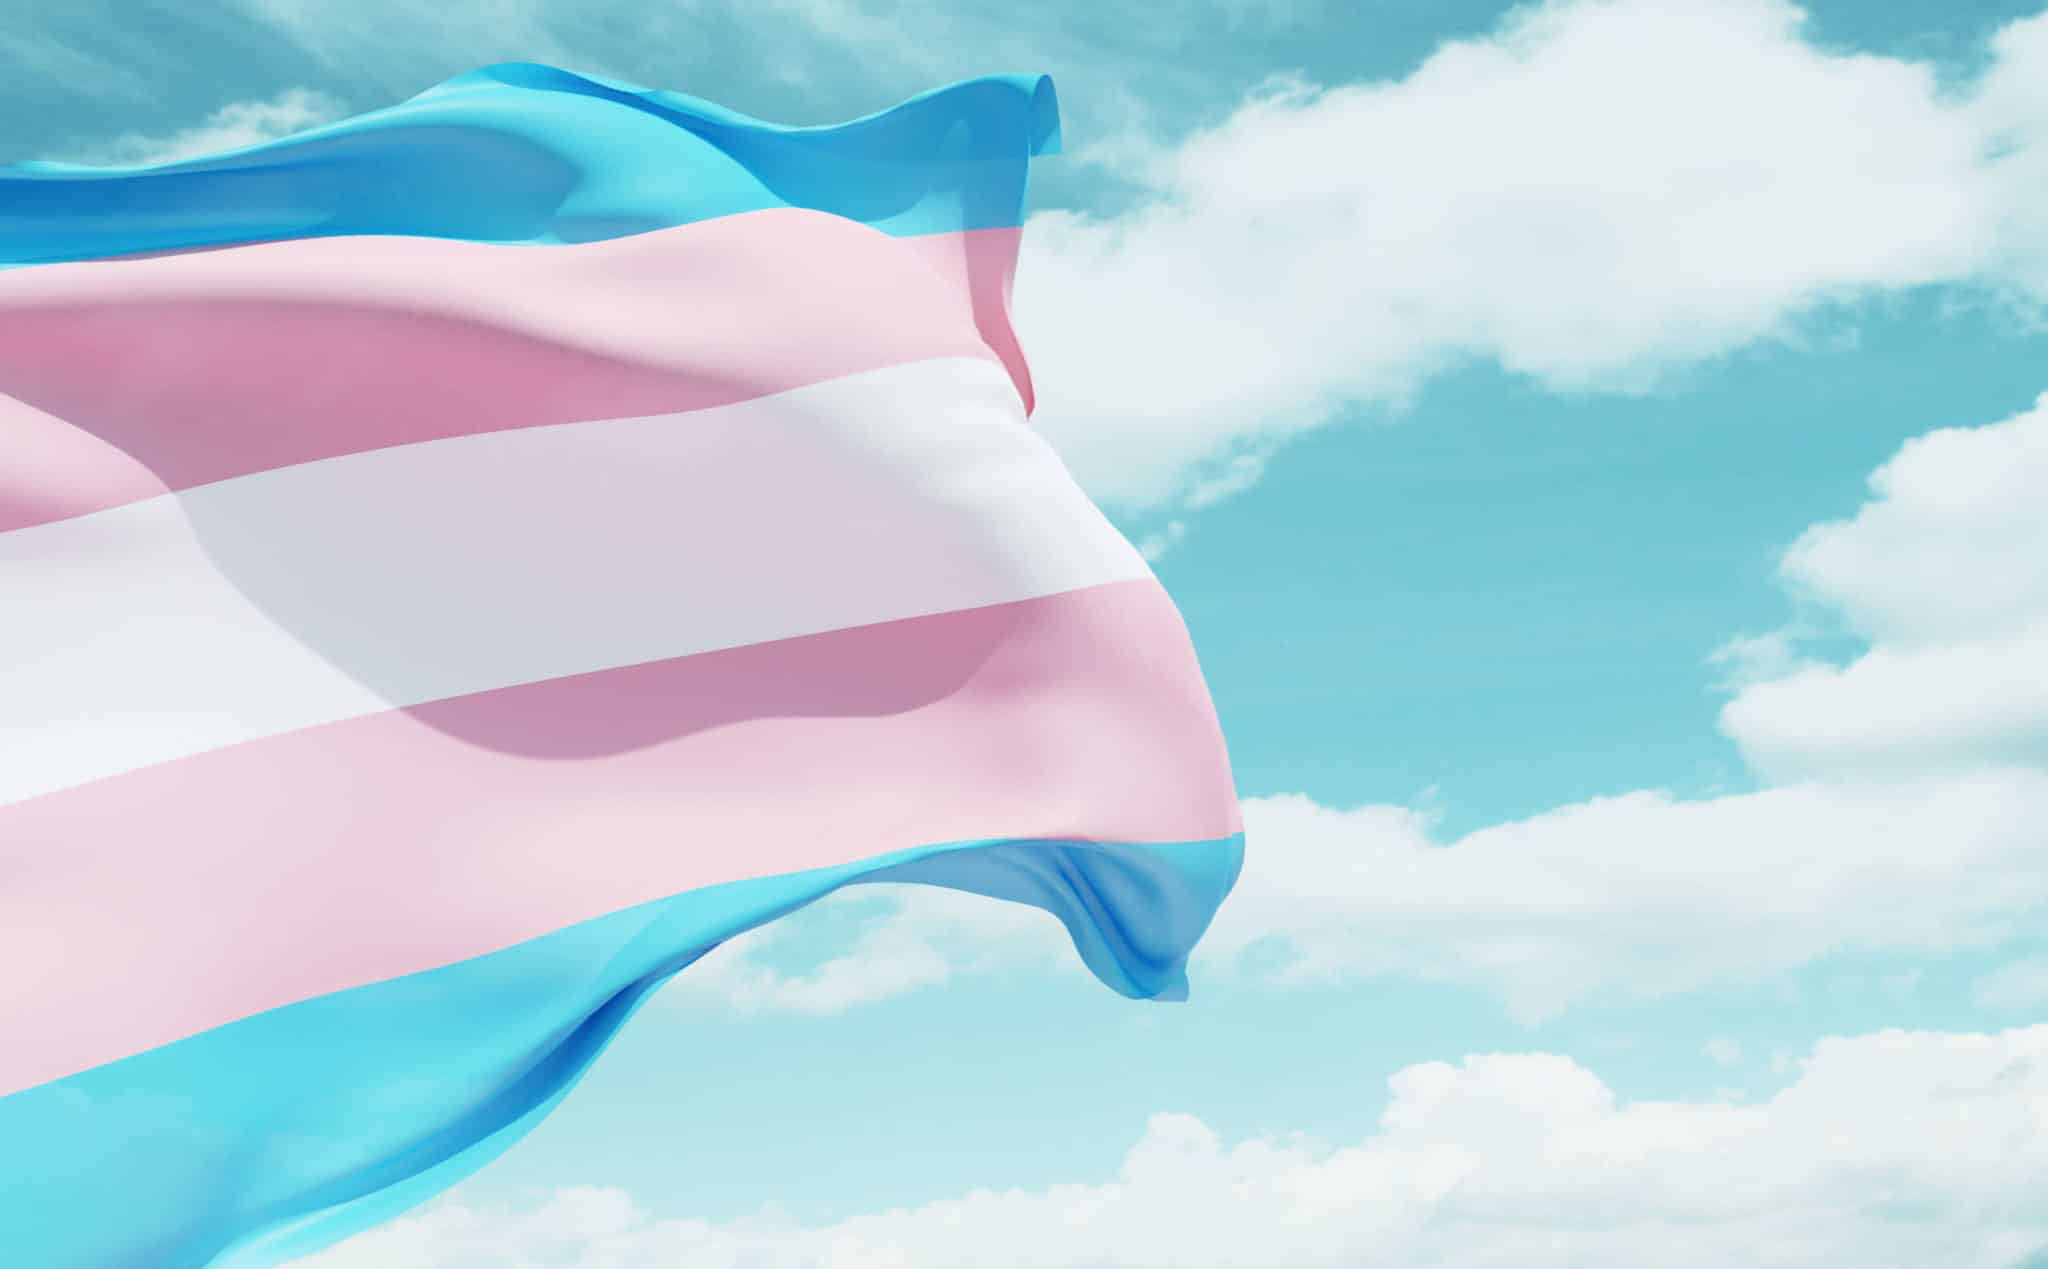 Les conservateurs de Virginie-Occidentale veulent définir légalement les personnes trans comme « obscènes »